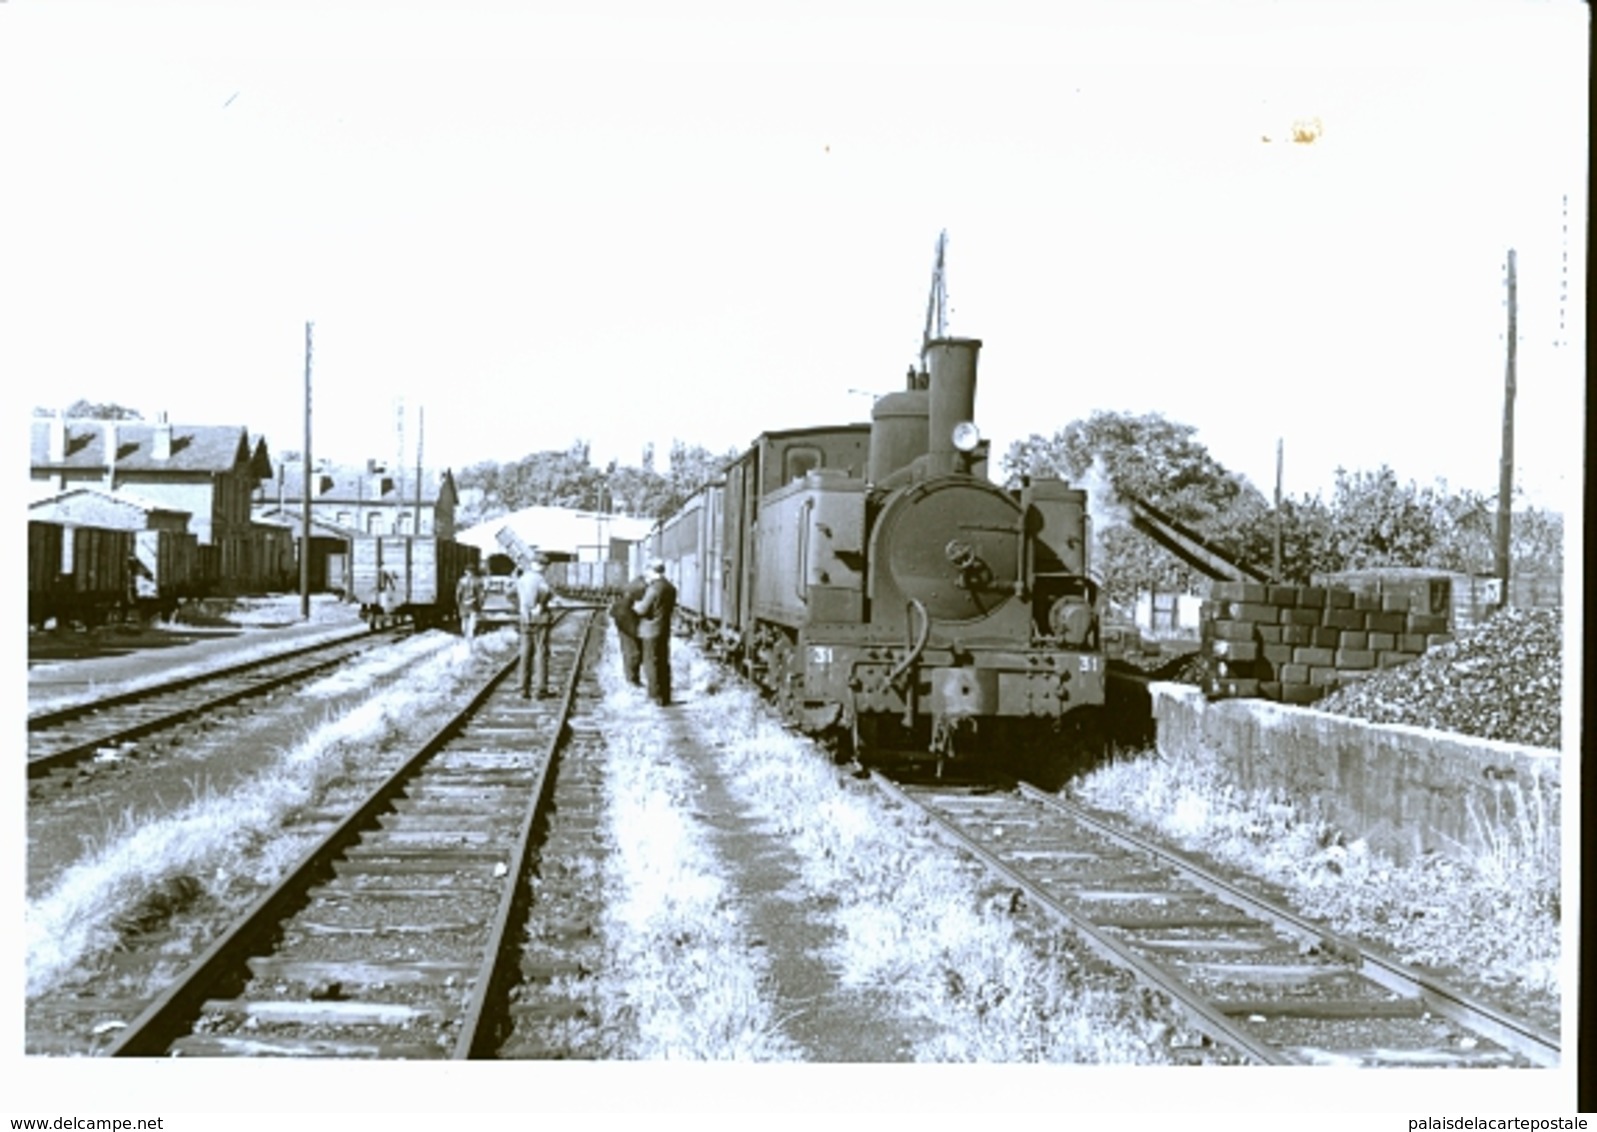 PHOTO ORIGINALE    CLICHE DE BAZIN              JLM - Gares - Avec Trains